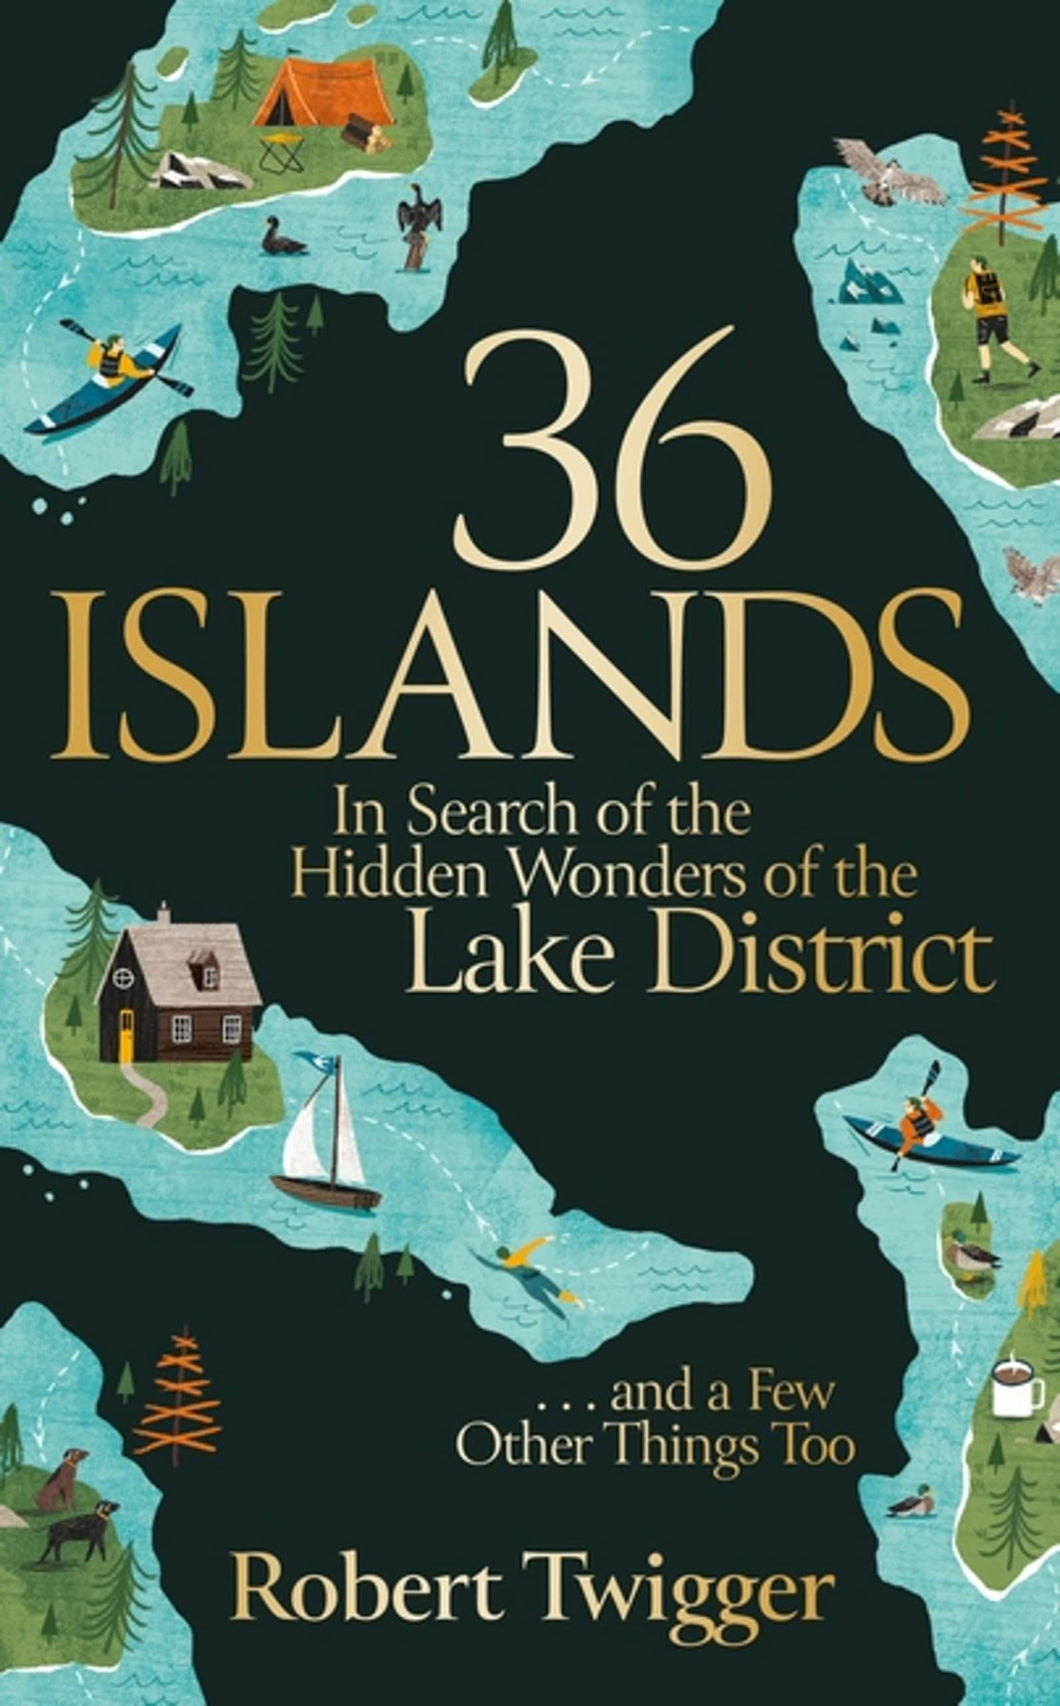 36 Islands, Robert Twigger